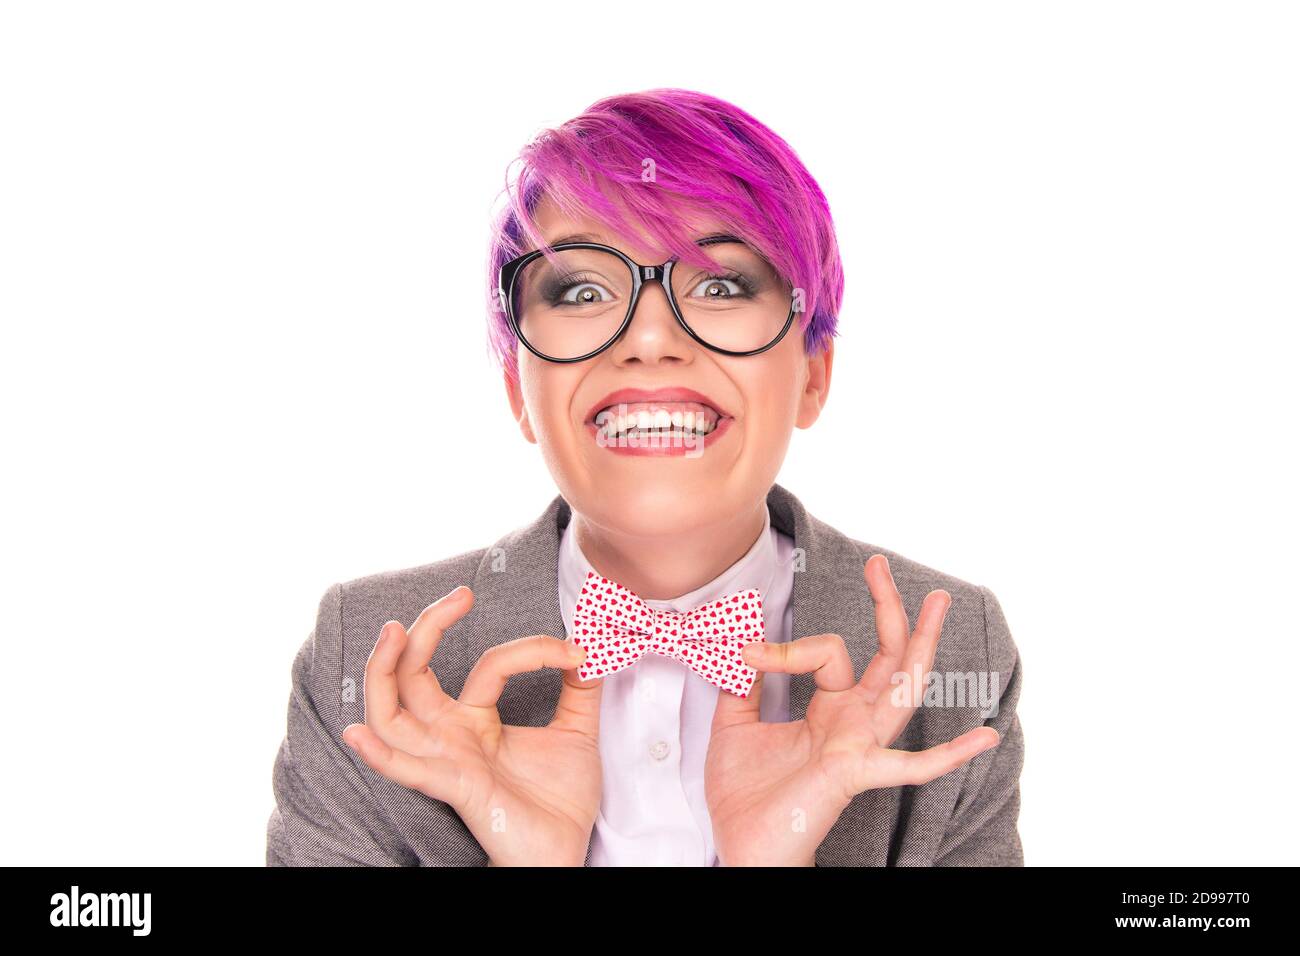 Aufgeregt Nerd. Portrait von lustigen jungen Mädchen Frau mit magenta lila rosa Haar halten Fliege mit Fingern zeigt es auf Sie Kamera lachend Stockfoto